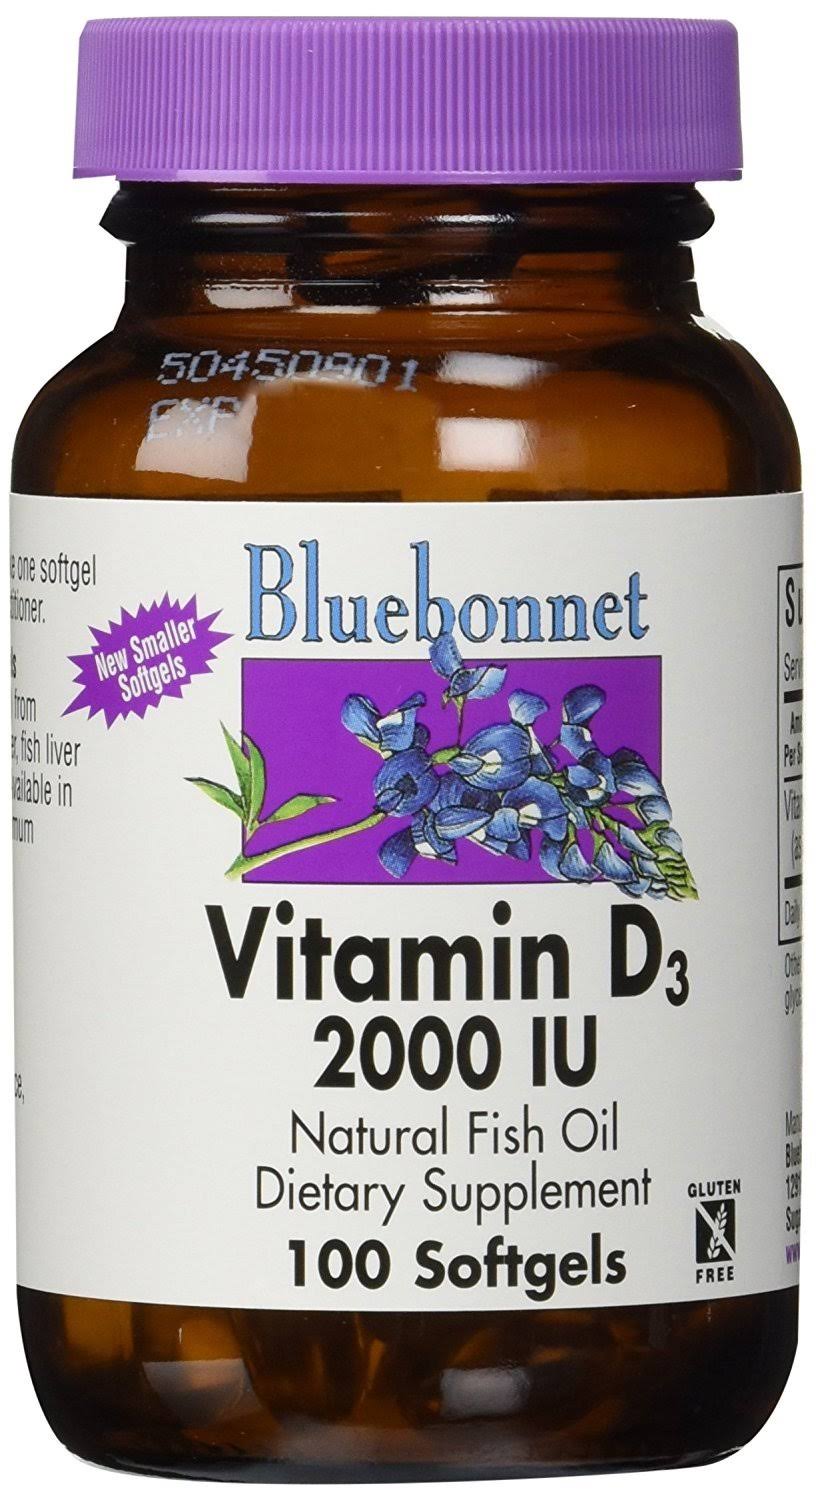 Bluebonnet Vitamin D3 2000 IU 100 Softgels